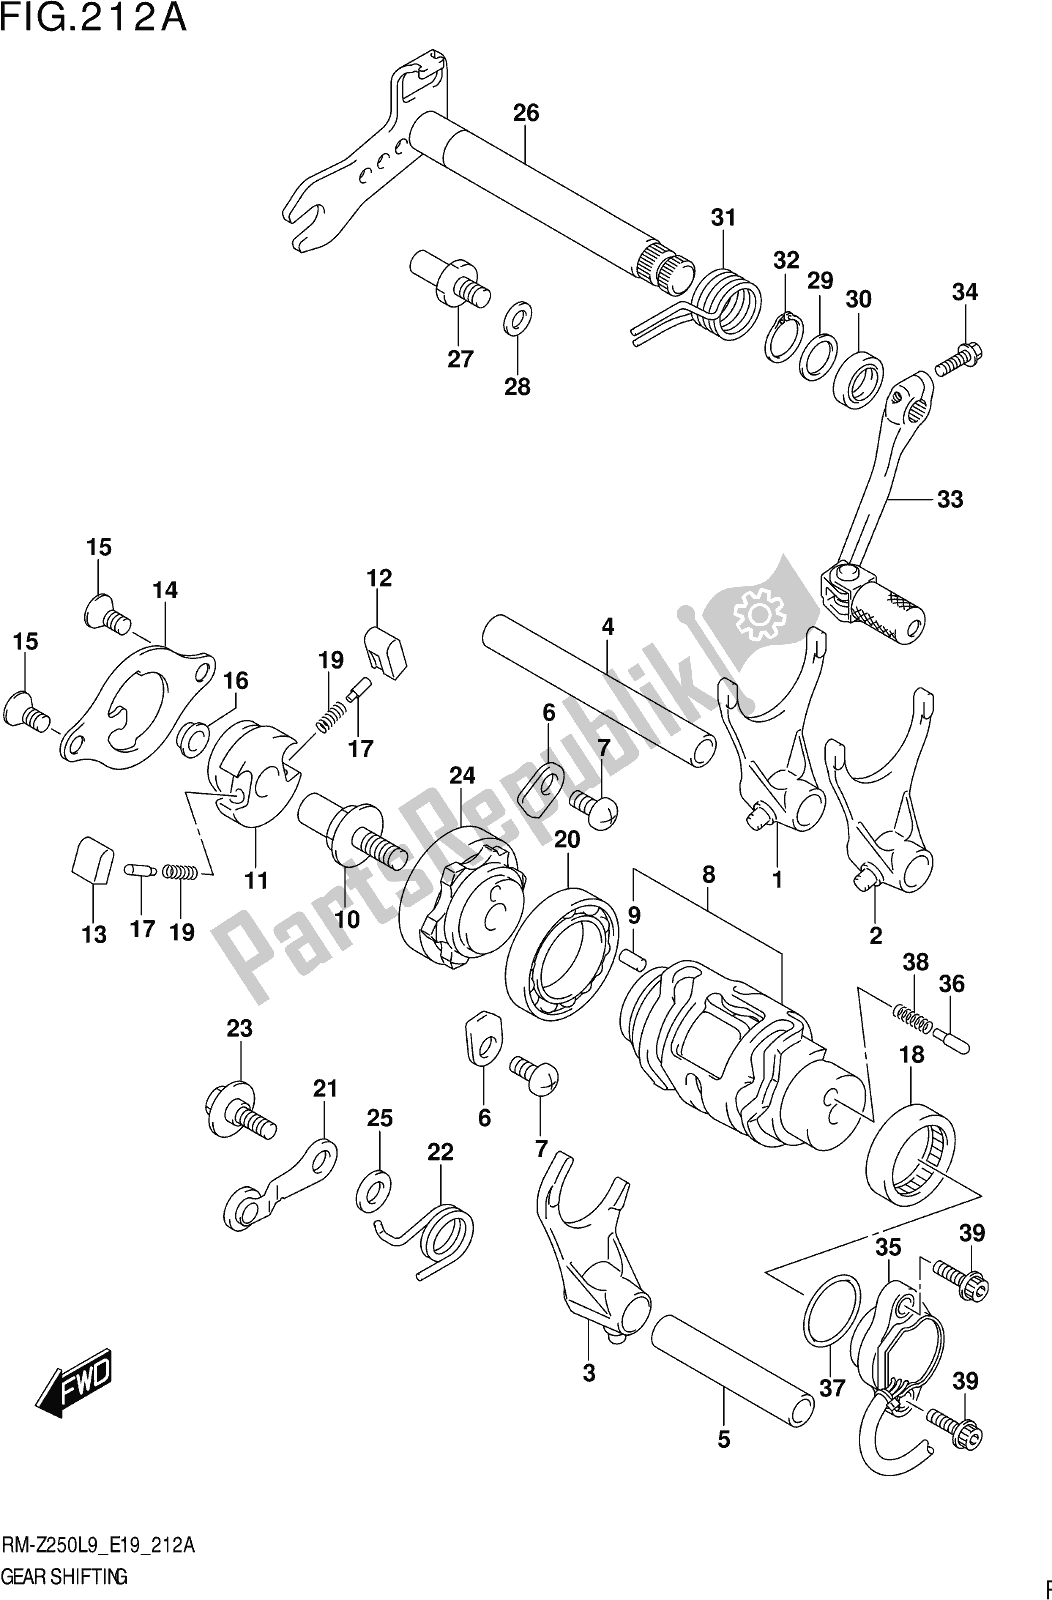 Alle onderdelen voor de Fig. 212a Gear Shifting van de Suzuki RM-Z 250 2019